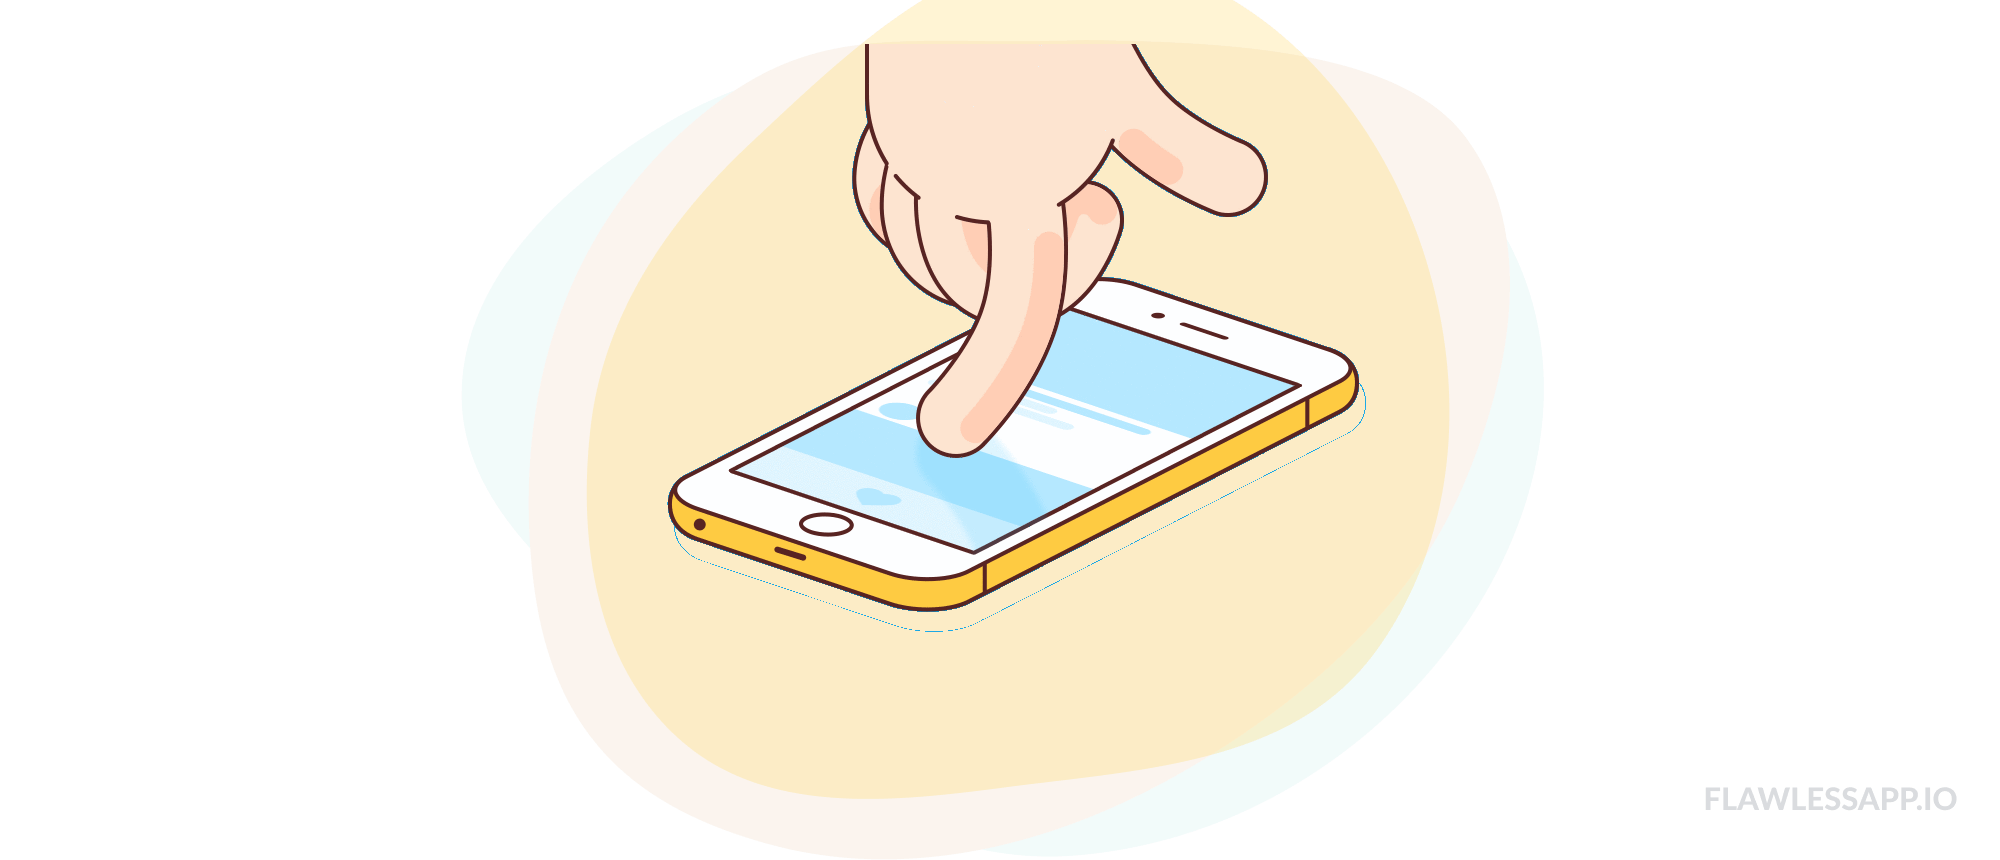 tela de rolagem de um smartphone - imagem ilustrativa- recomendações para o uso de telas na infância